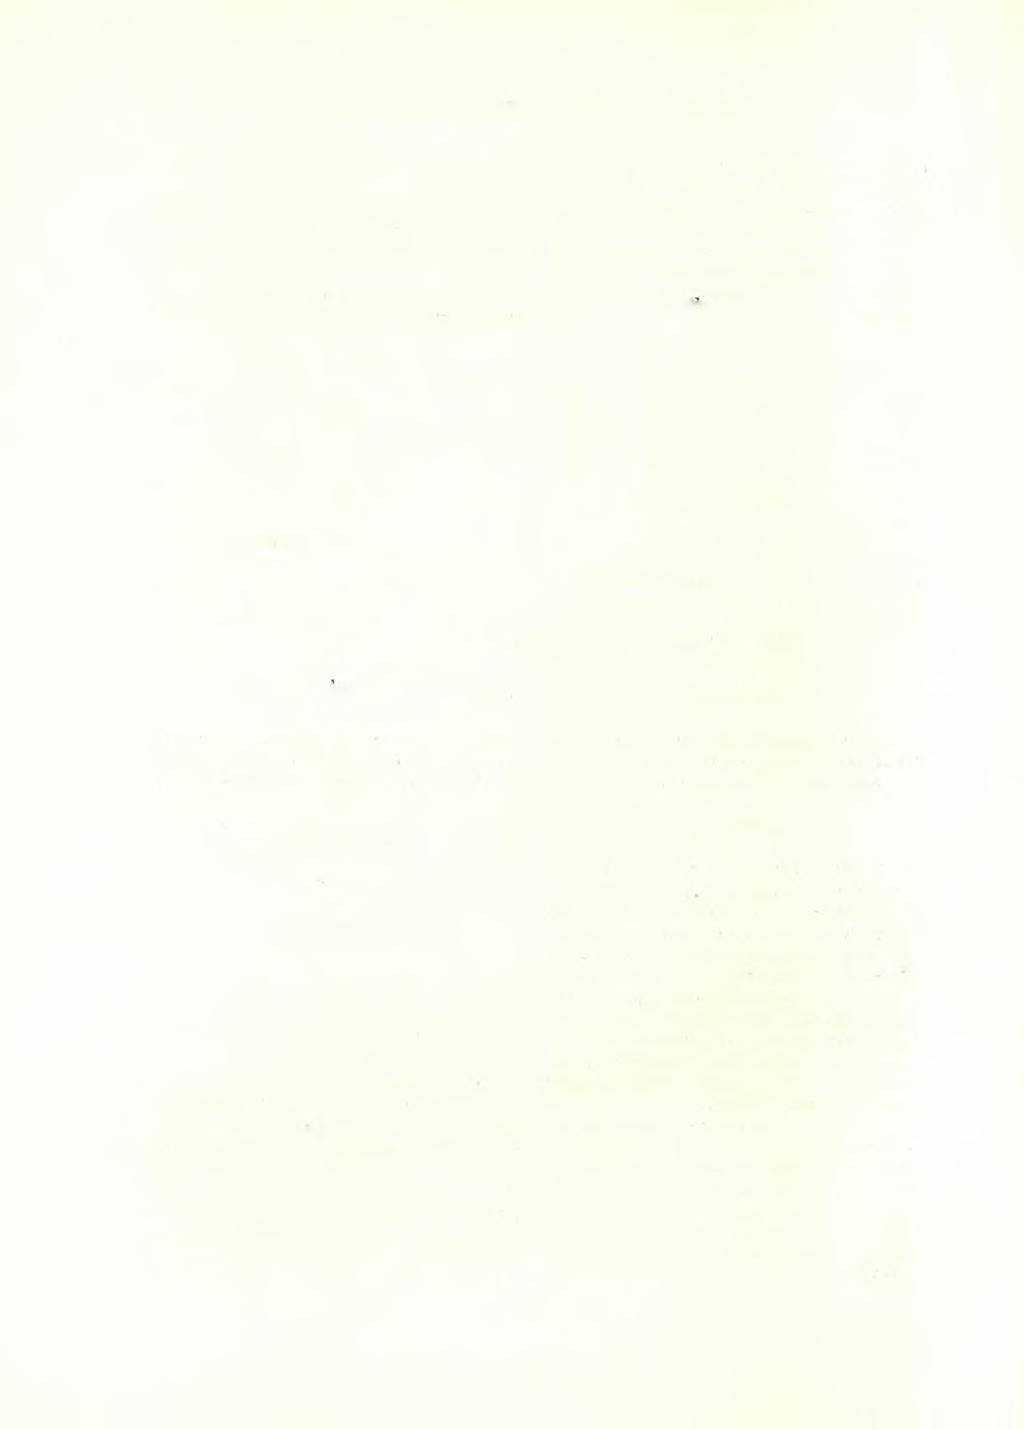 36 ΑΡΧΑΙΟΛΟΓΙΚΟΝ ΔΕΛΤΙΟΝ 17 (1961 /2): ΧΡΟΝΙΚΑ έπΐ τής άνω έπιφανείας φέρει τήν έγχάρακτον μετά τήν όπτησιν τοο άγγείου έπιγραφήν ( Π ί ν.